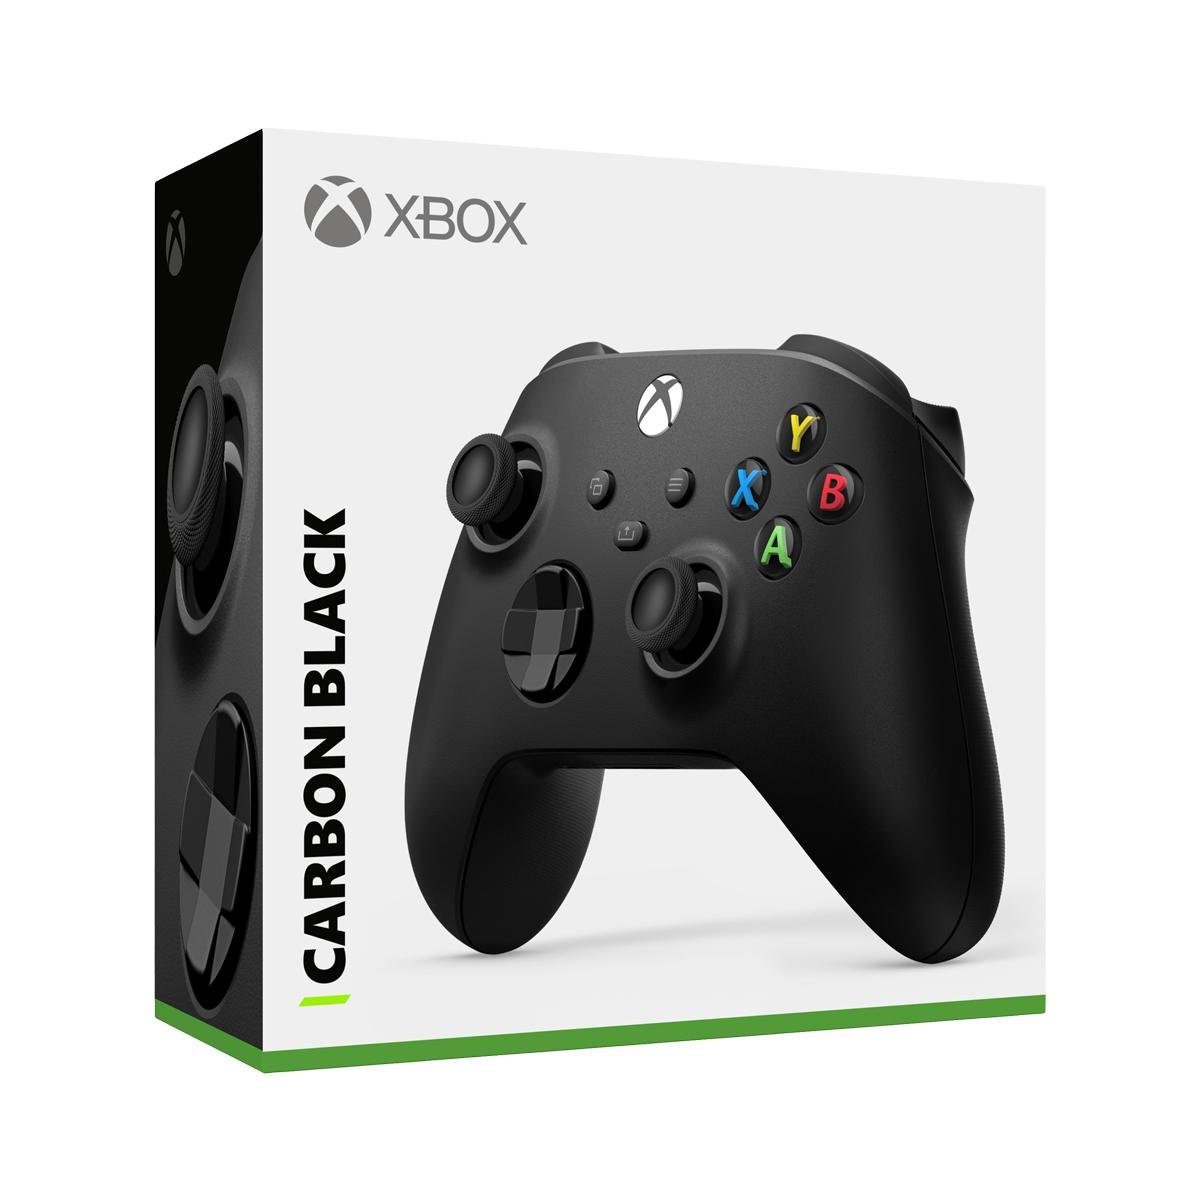 Novo controle do Xbox One pode ser usado em PCs e celulares sem